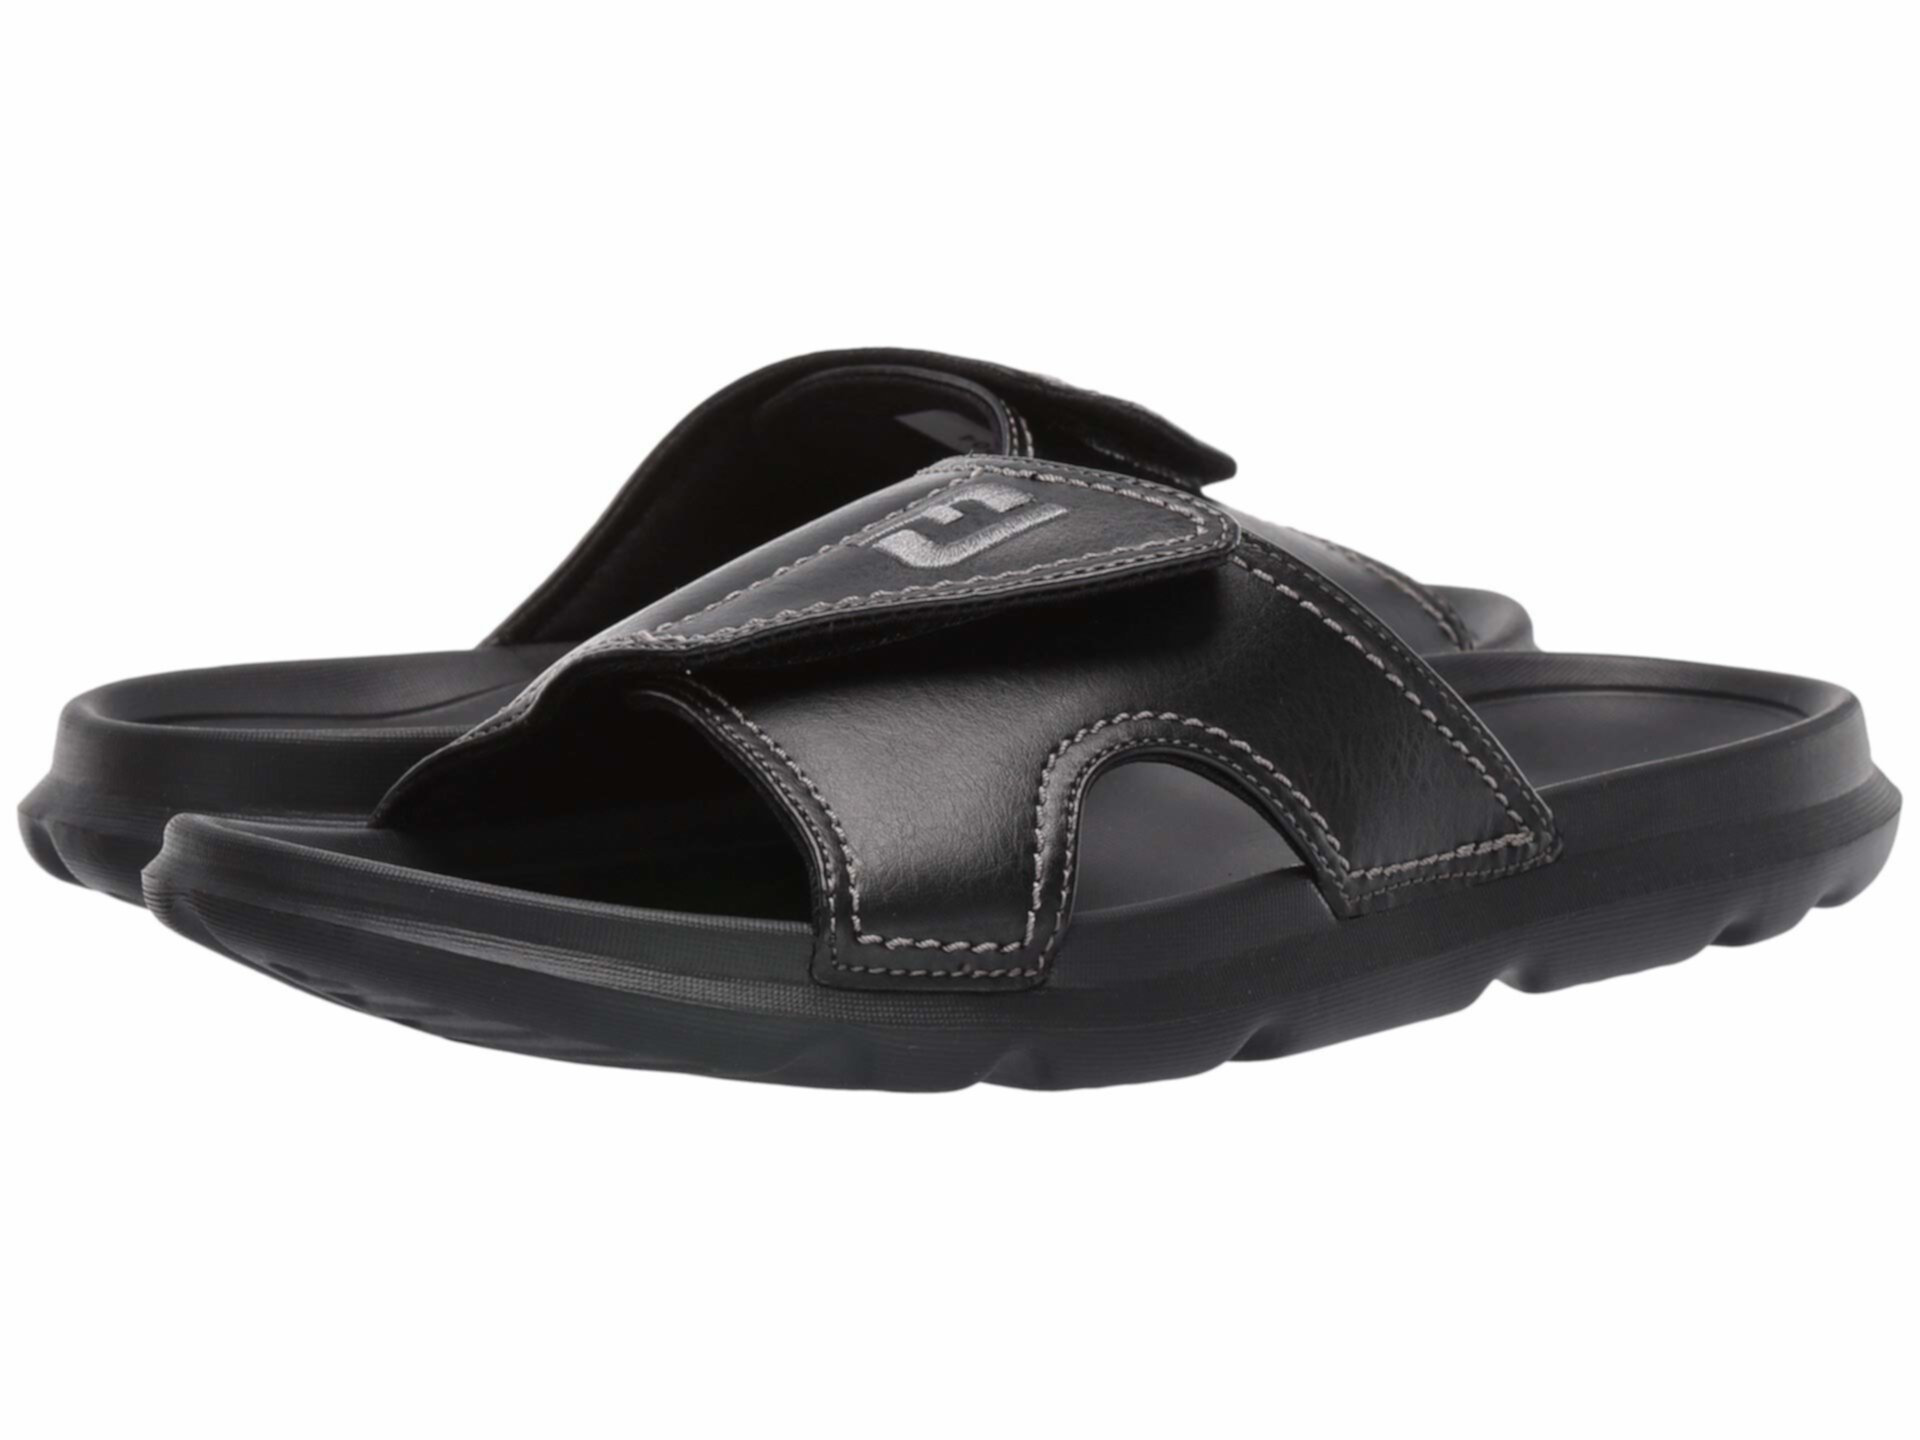 Гольф-сандалии FJ Slide от FootJoy для мужчин, категория активная обувь FootJoy